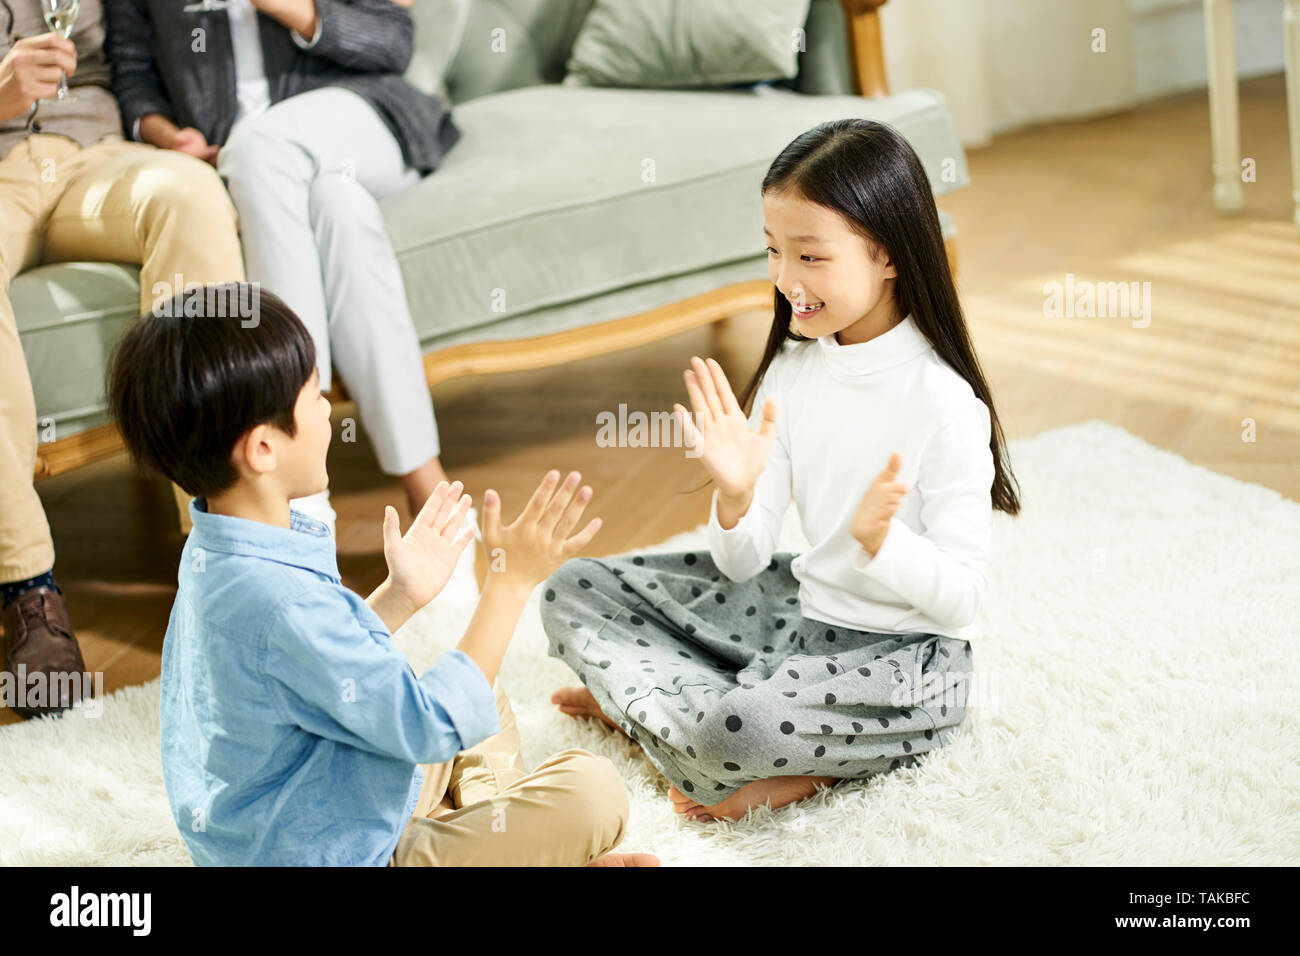 Deux enfants asiatiques mignon petit frère et sœur assis sur un tapis de jeu jouer avec parent assis sur un canapé à l'arrière-plan Banque D'Images